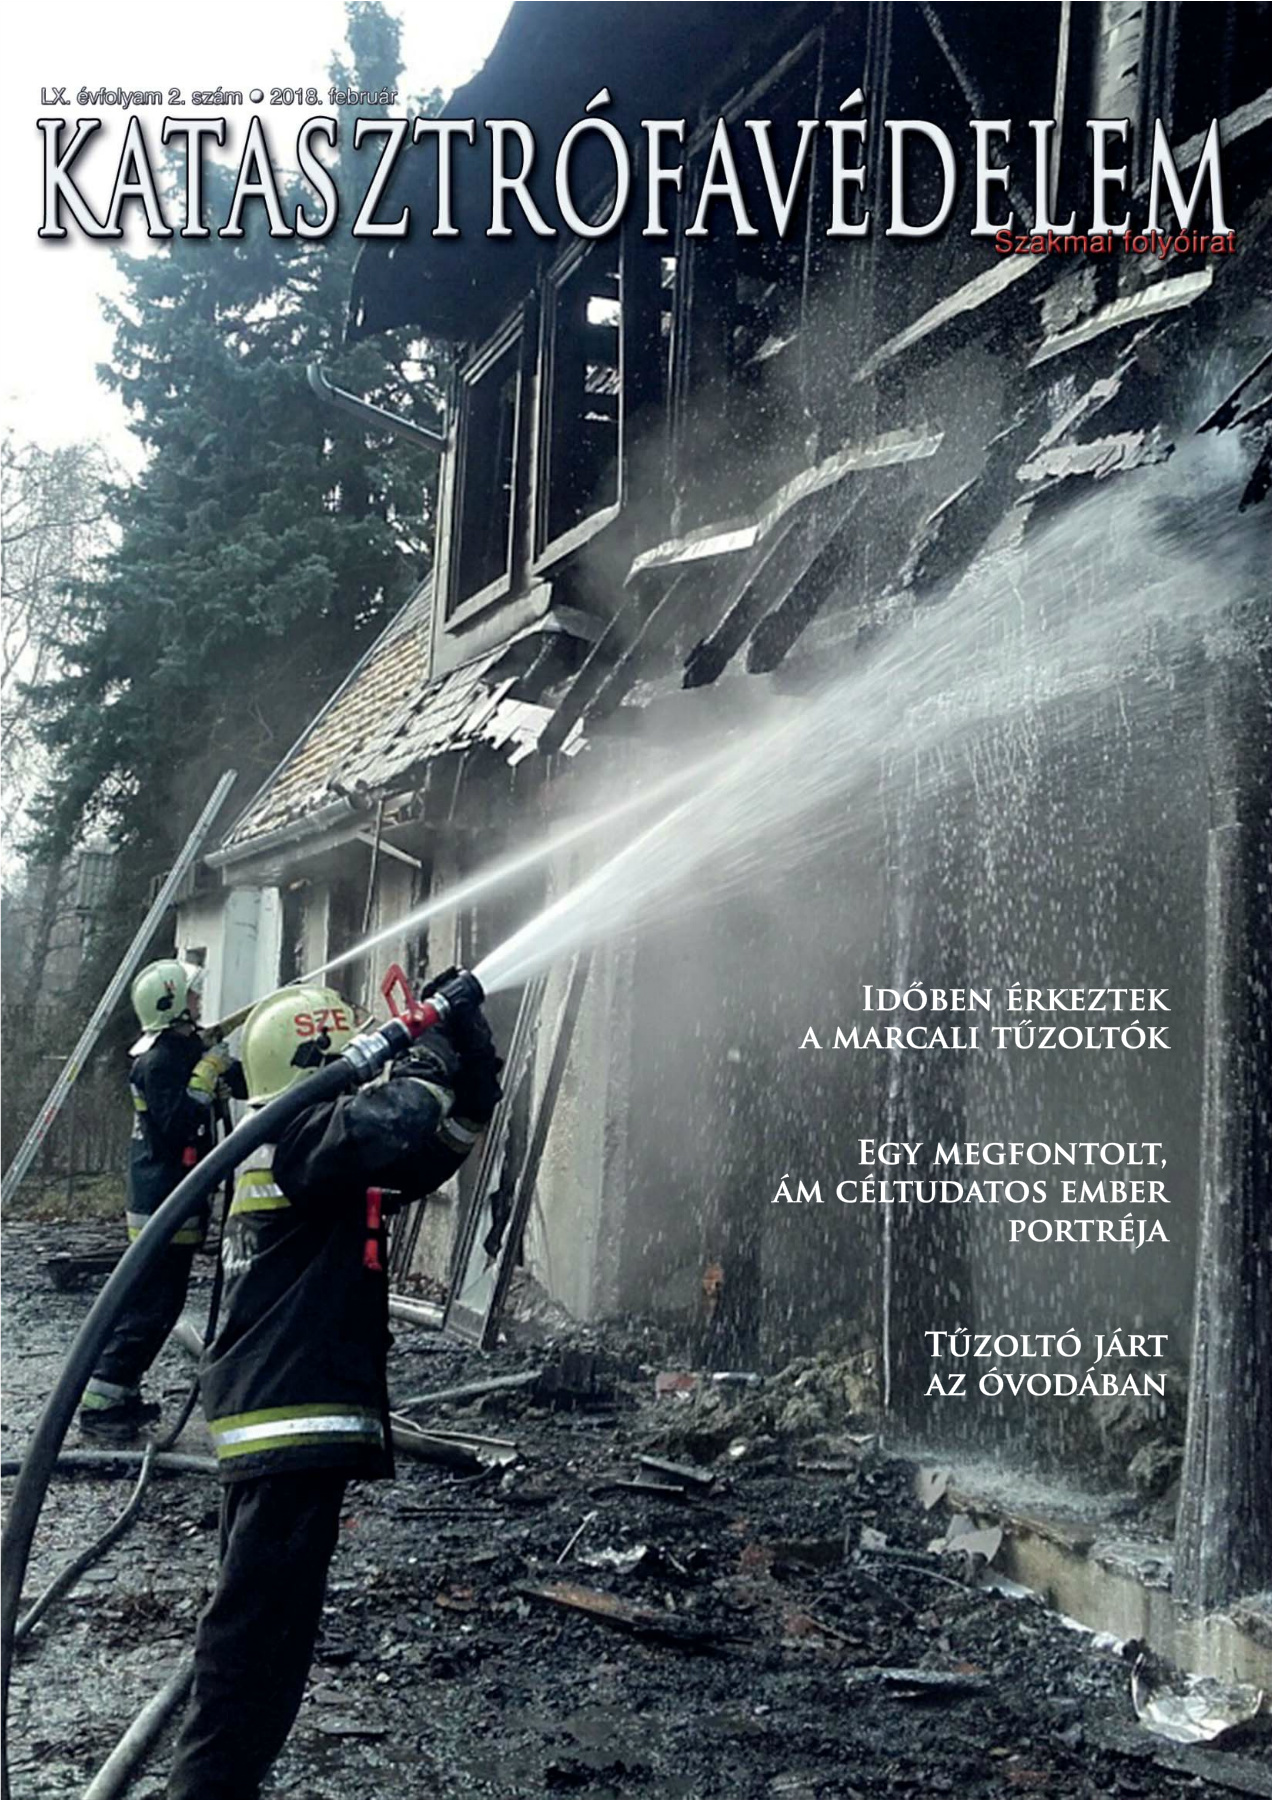 A Katasztrófavédelem magazin LX. évfolyam 2. szám megtekintése